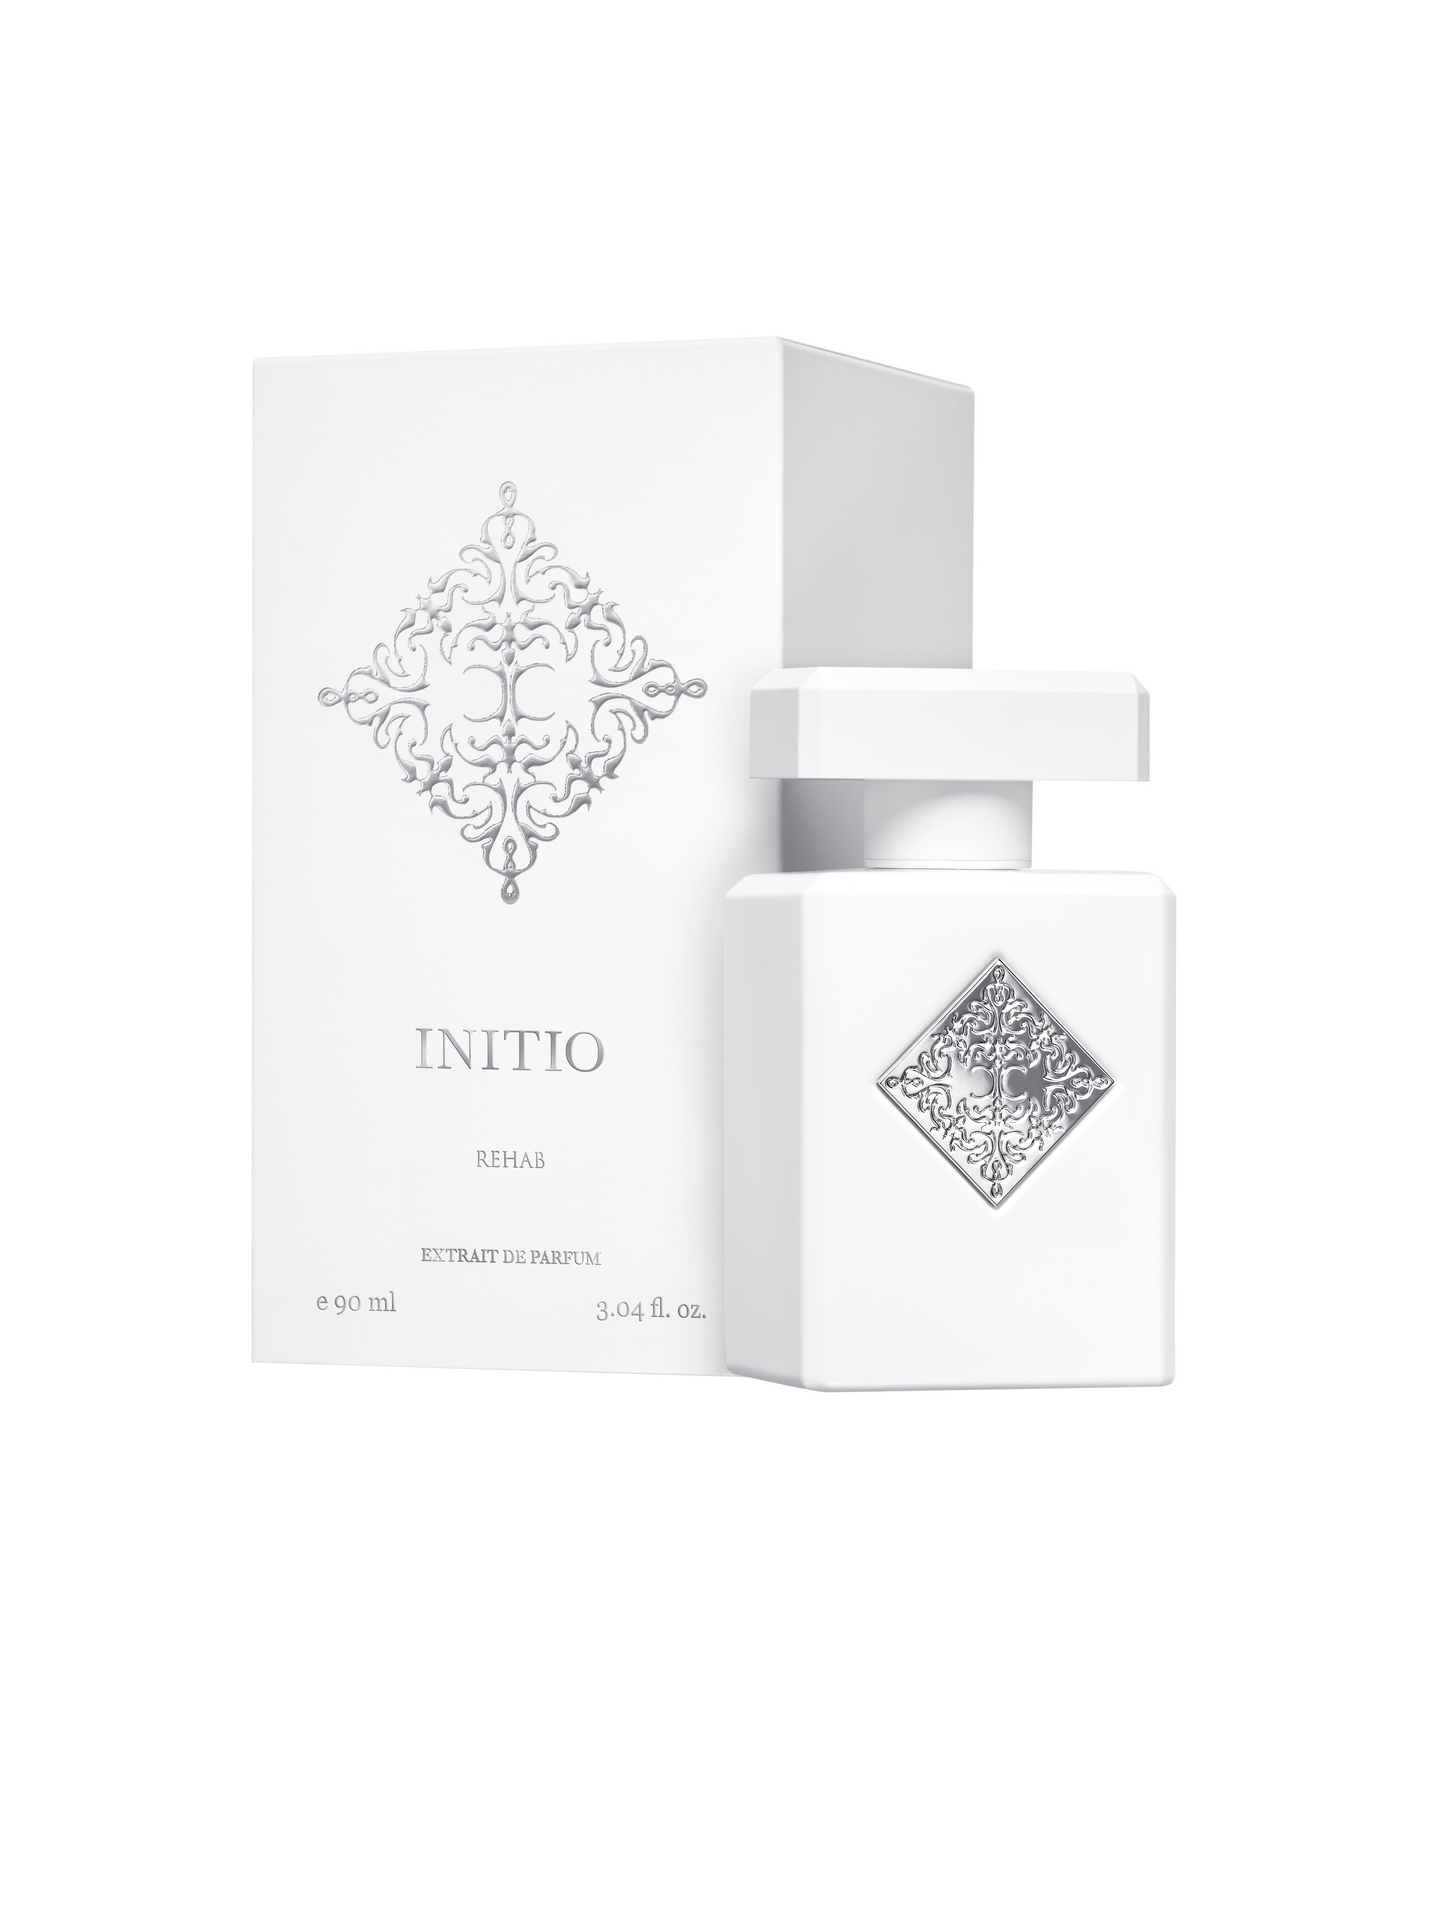 Initio - Rehab - Extrait De Parfum.